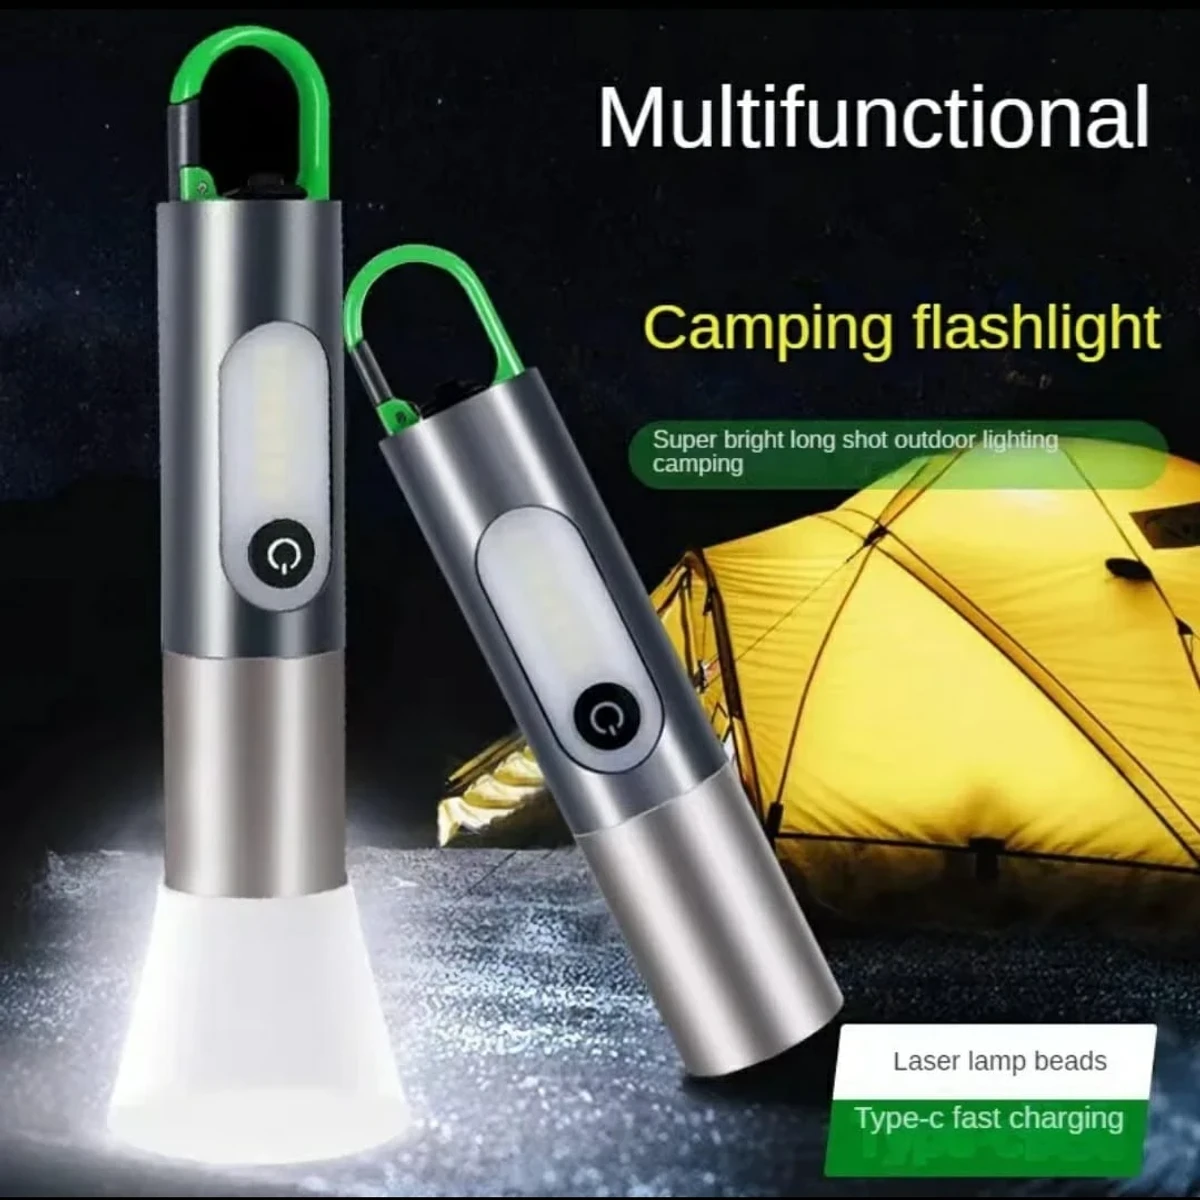 LED Multifunctional Camping Flashlight